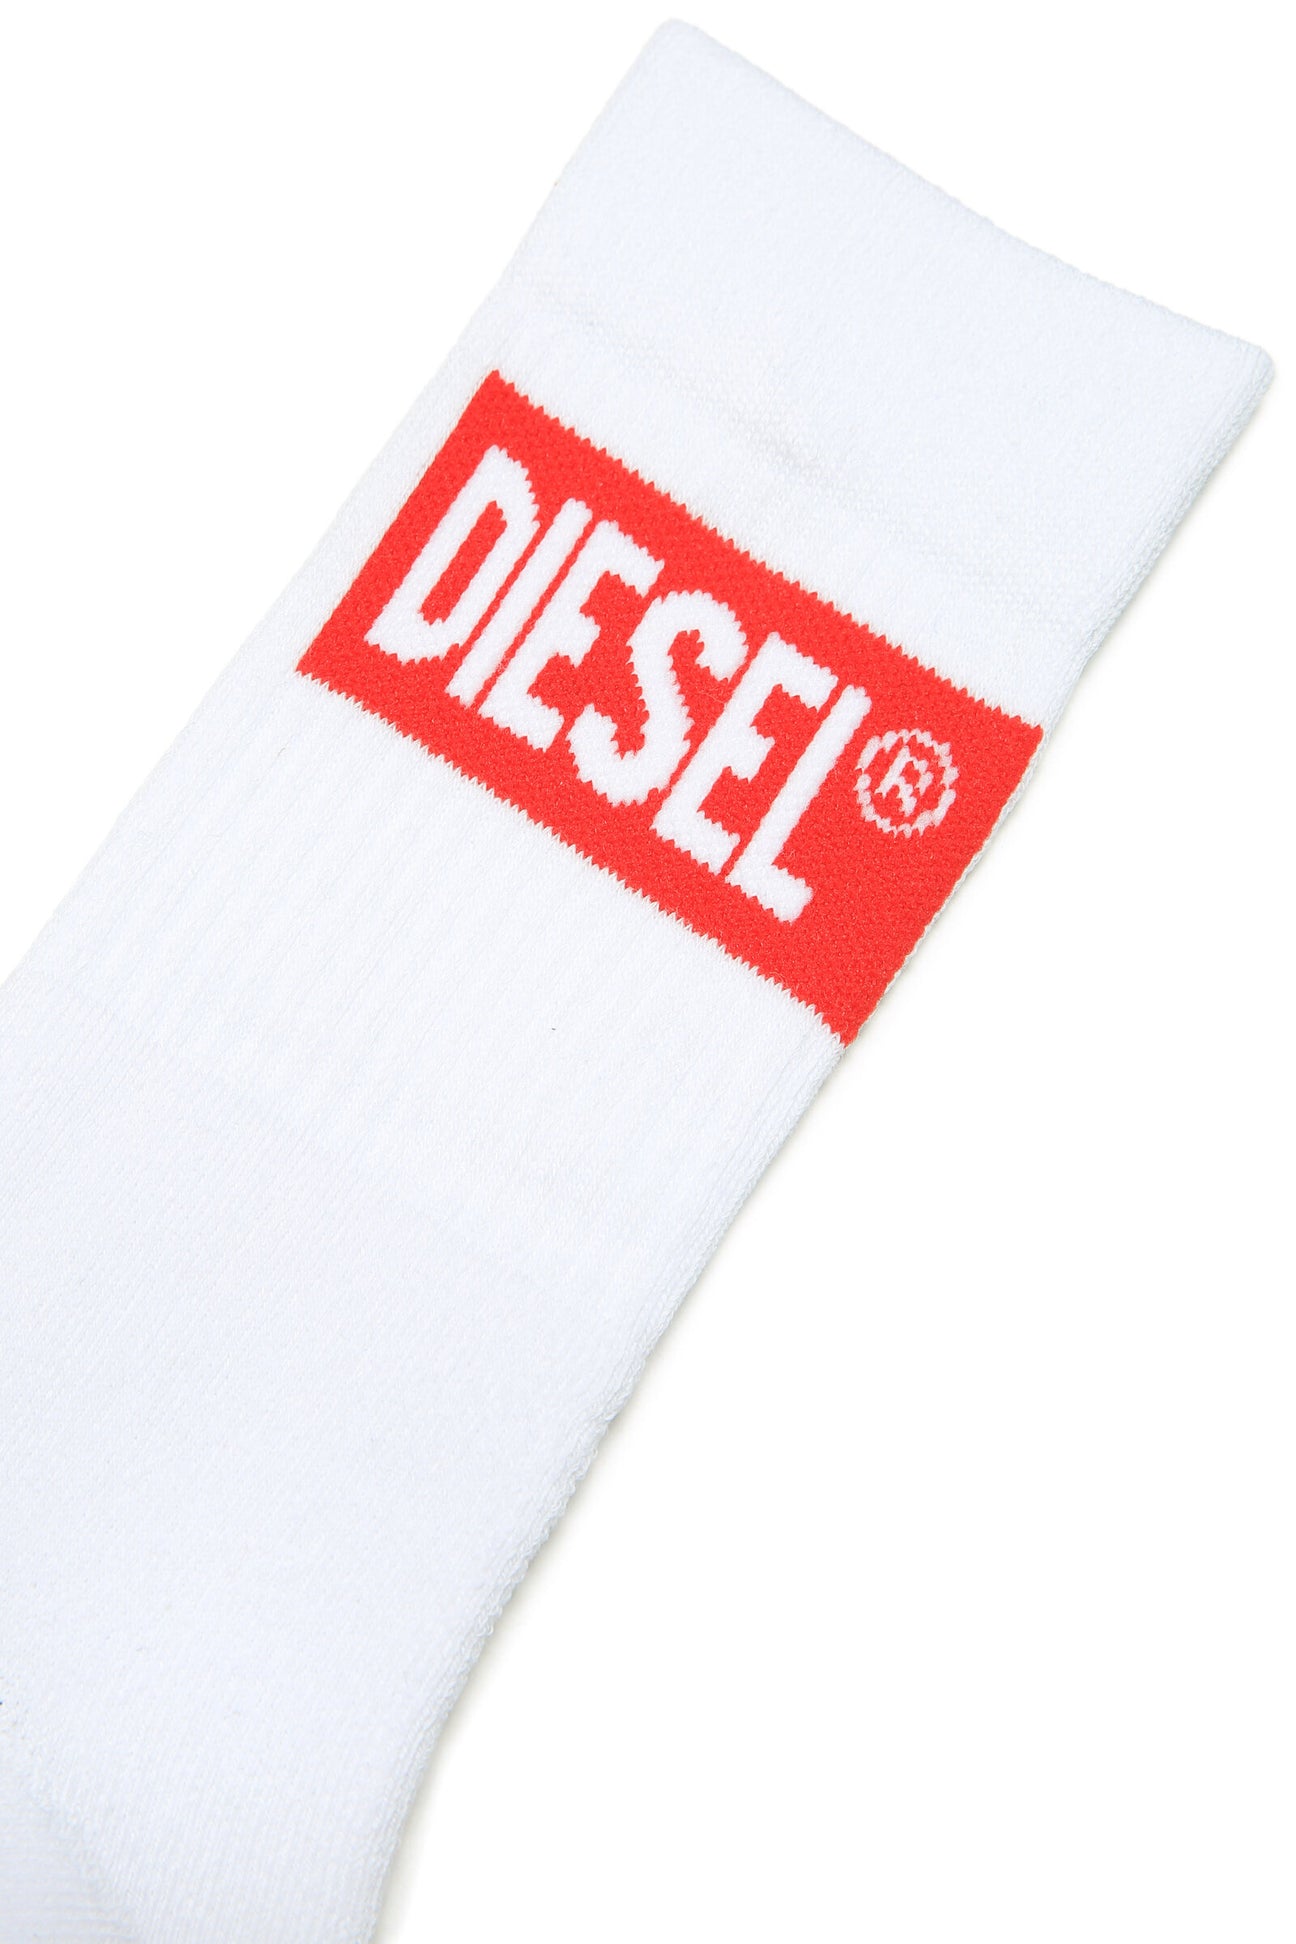 White socks with red Diesel logo White socks with red Diesel logo